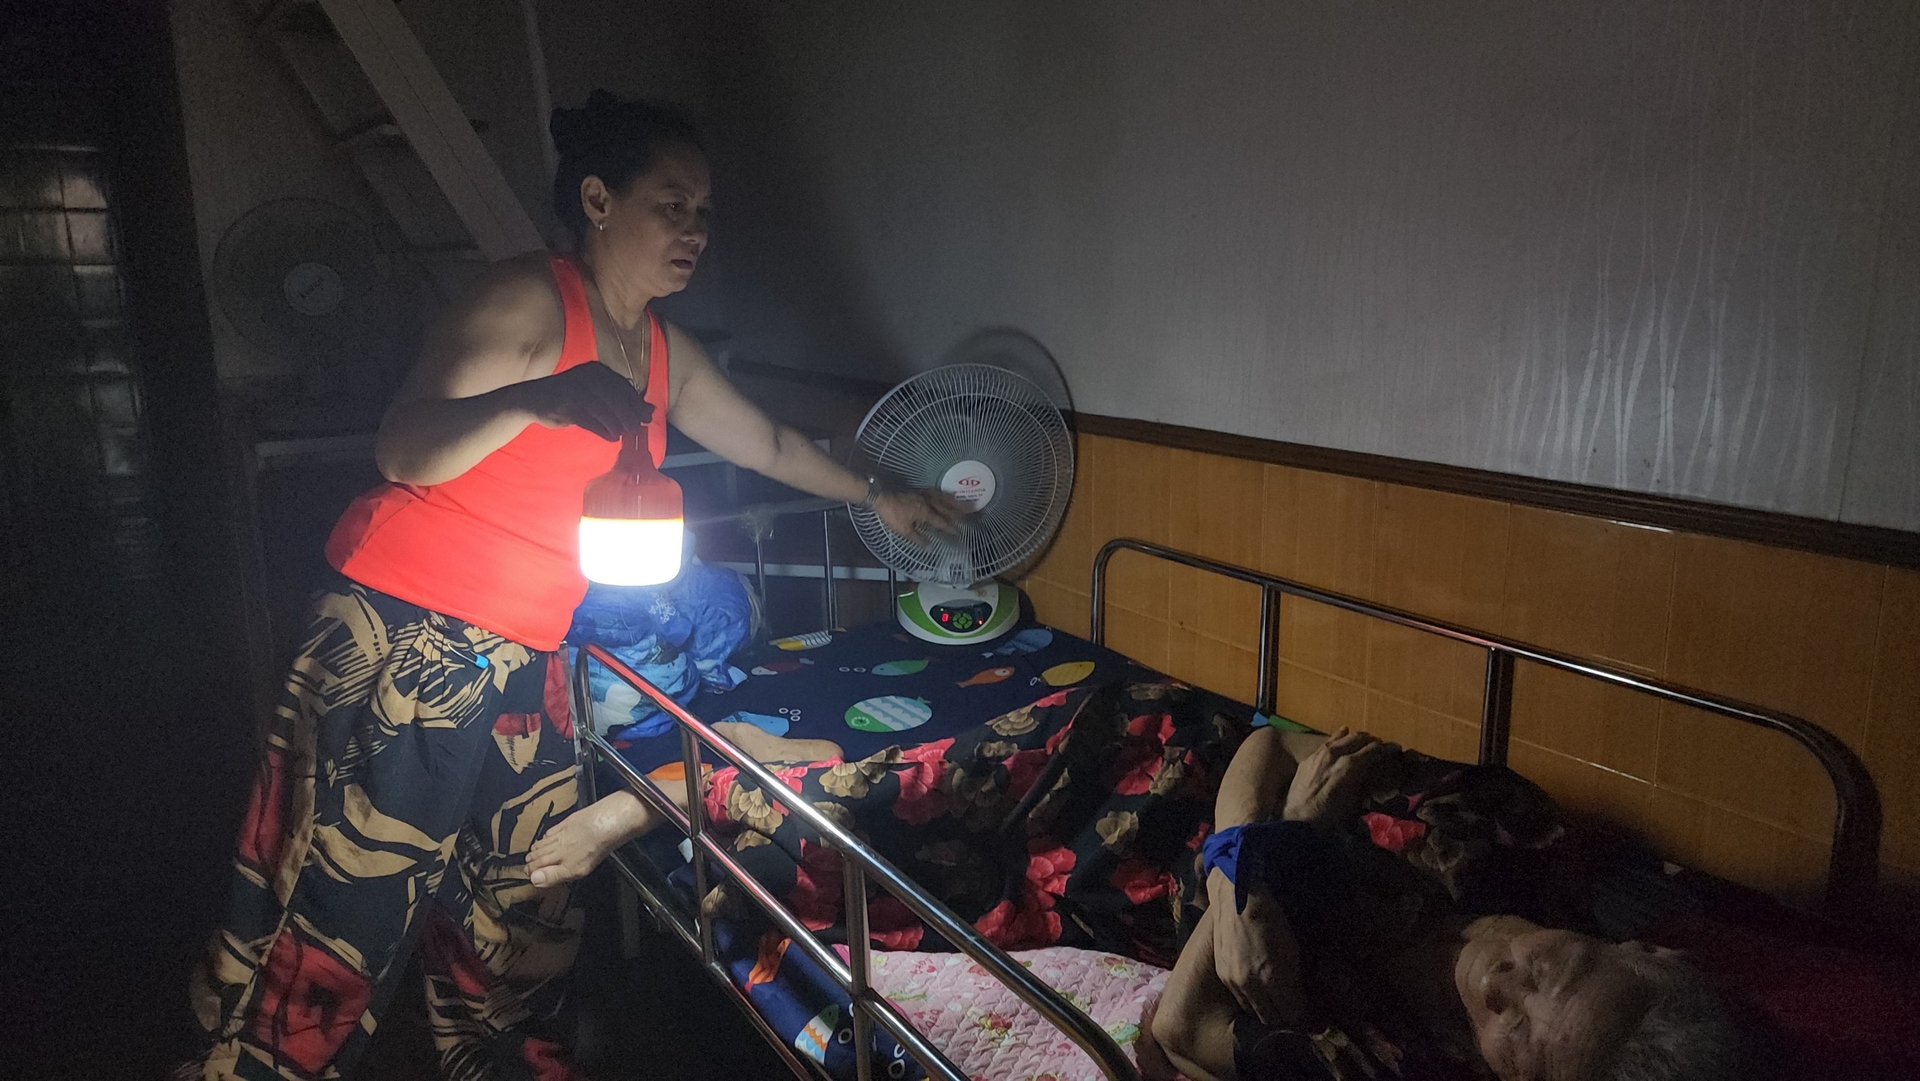 Chị Thanh Bình mua vội chiếc quạt tích điện về để phục vụ mẹ già đang ốm. Ảnh: Đinh Mười.